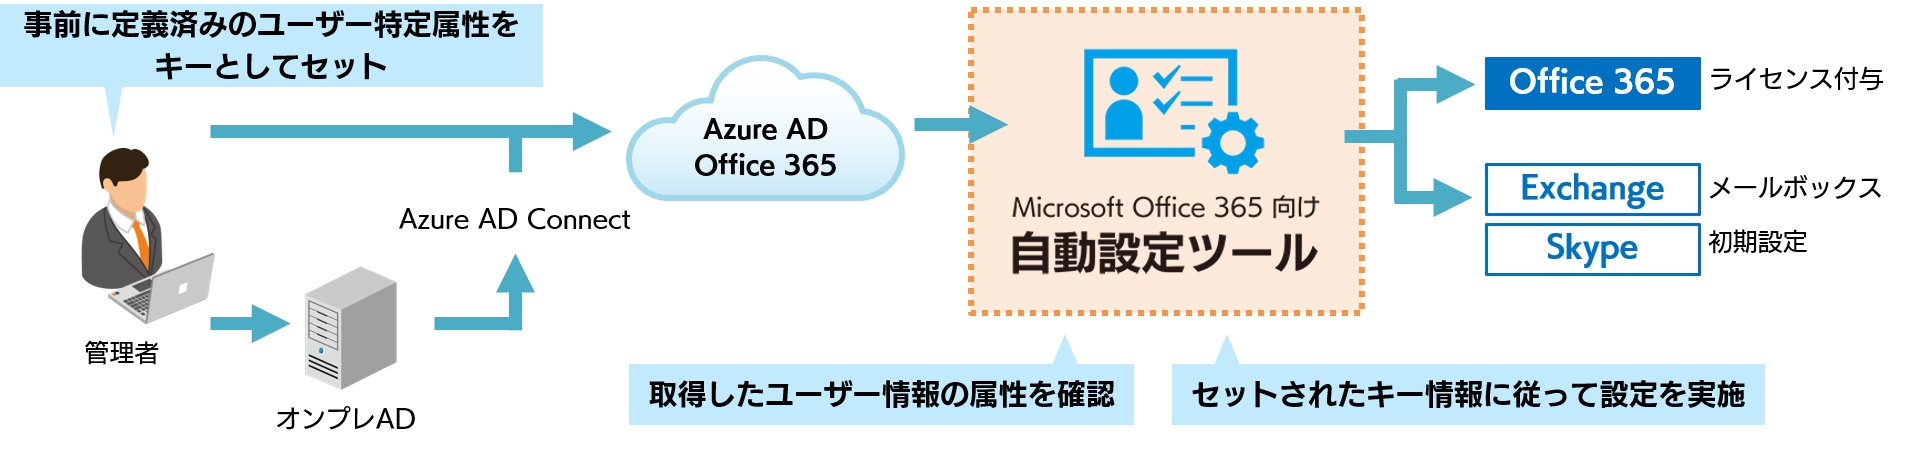 Microsoft Office 365アカウントの設定自動化で管理業務をサポート